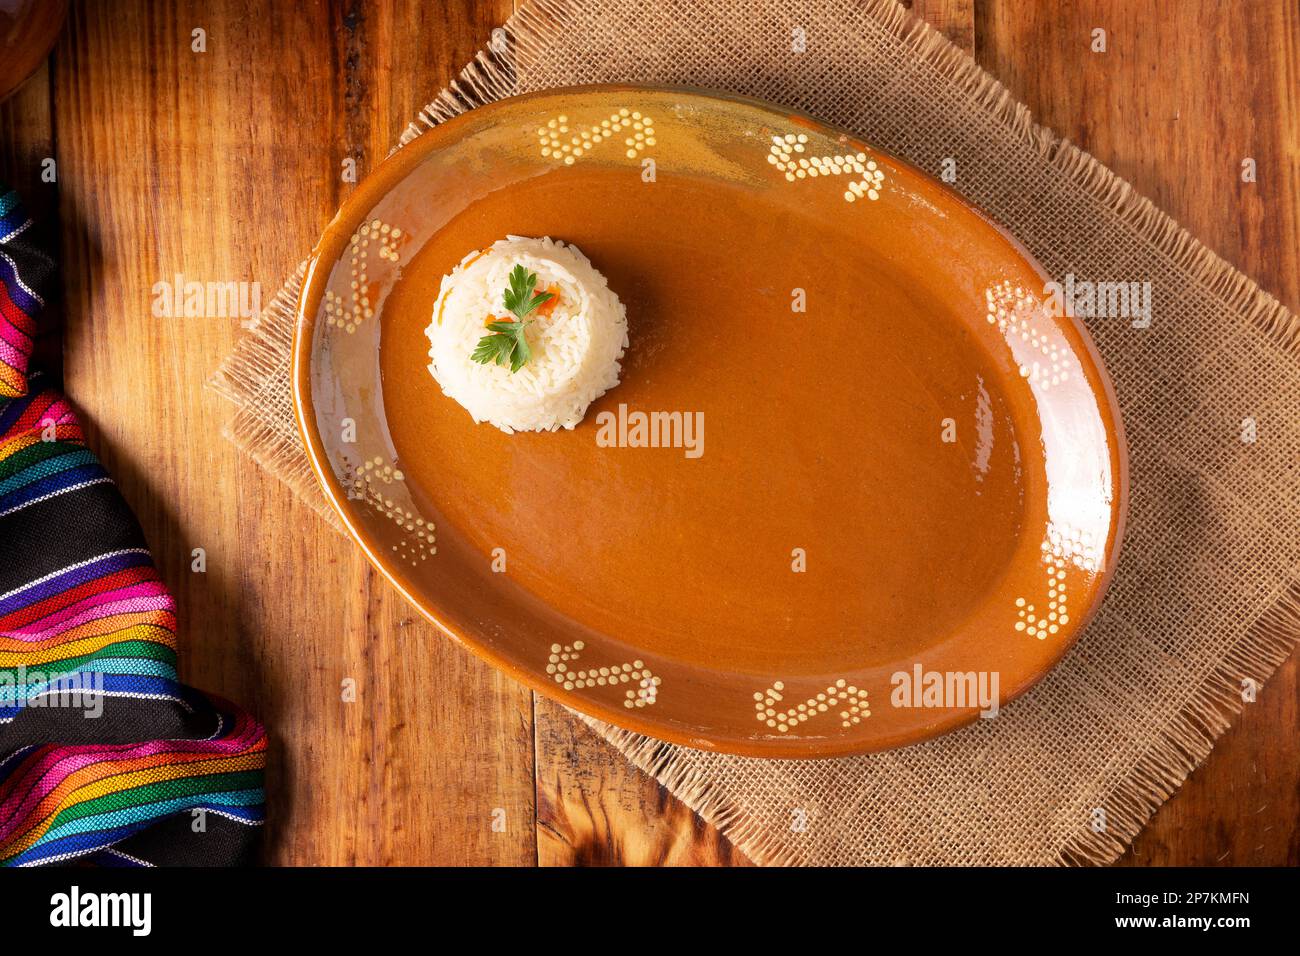 Kochhintergrund mit halbleerem Schlammgericht, typisch mexikanischer Stoff auf rustikalem Holztisch. Tabellenansicht mit Kopierbereich. Stockfoto